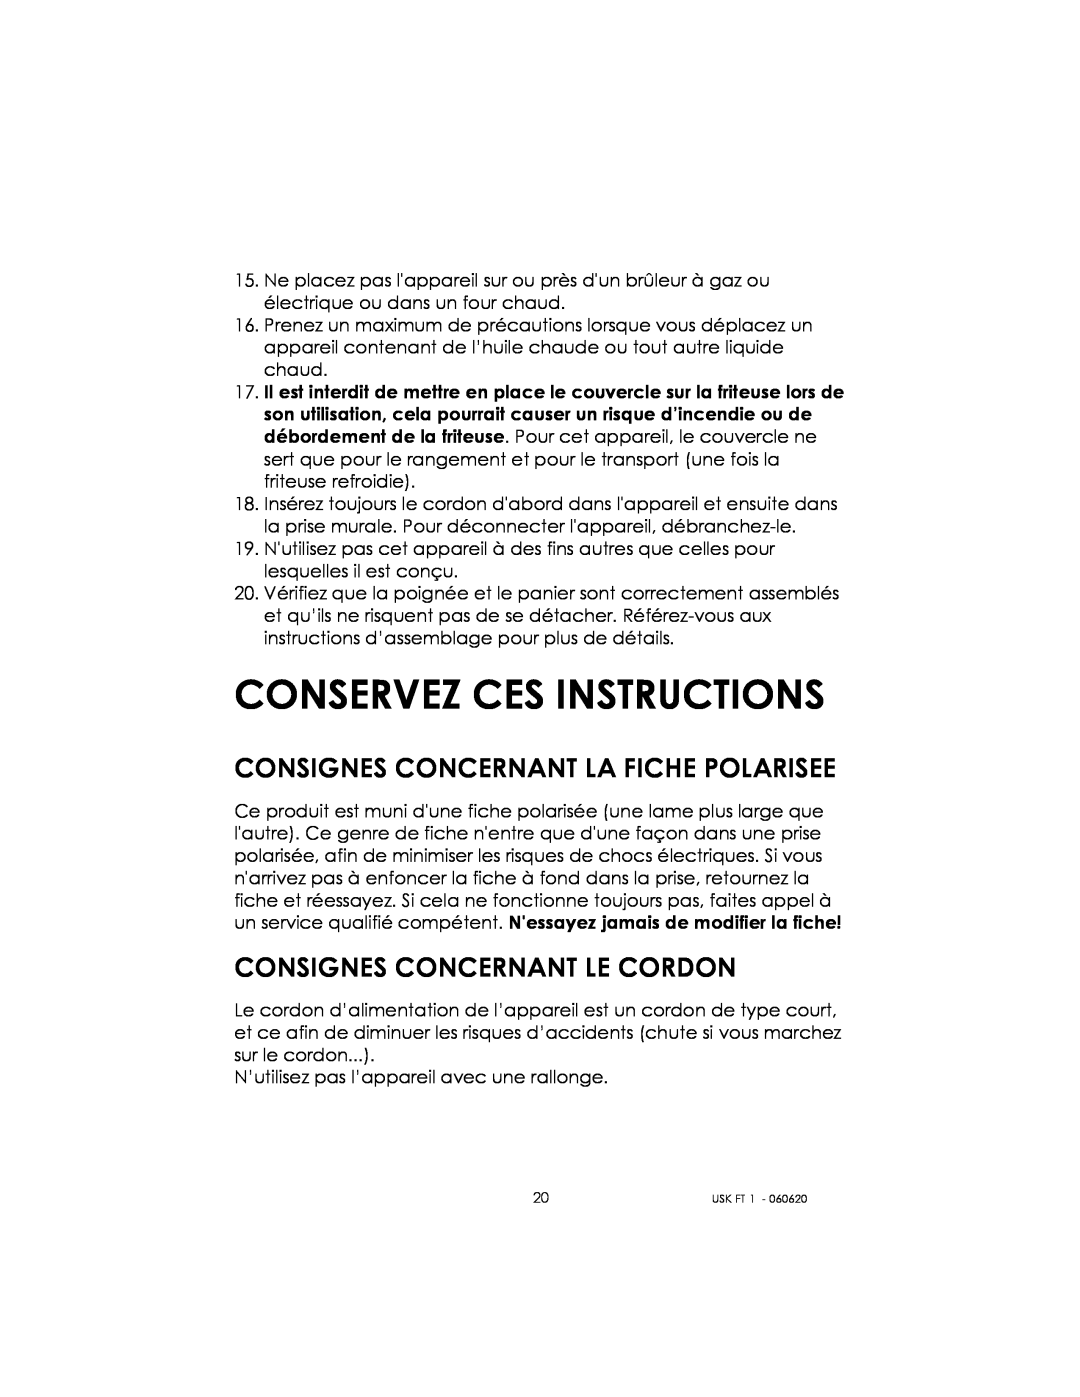 Kalorik USK FT 1 manual Conservez Ces Instructions, Consignes Concernant La Fiche Polarisee, Consignes Concernant Le Cordon 